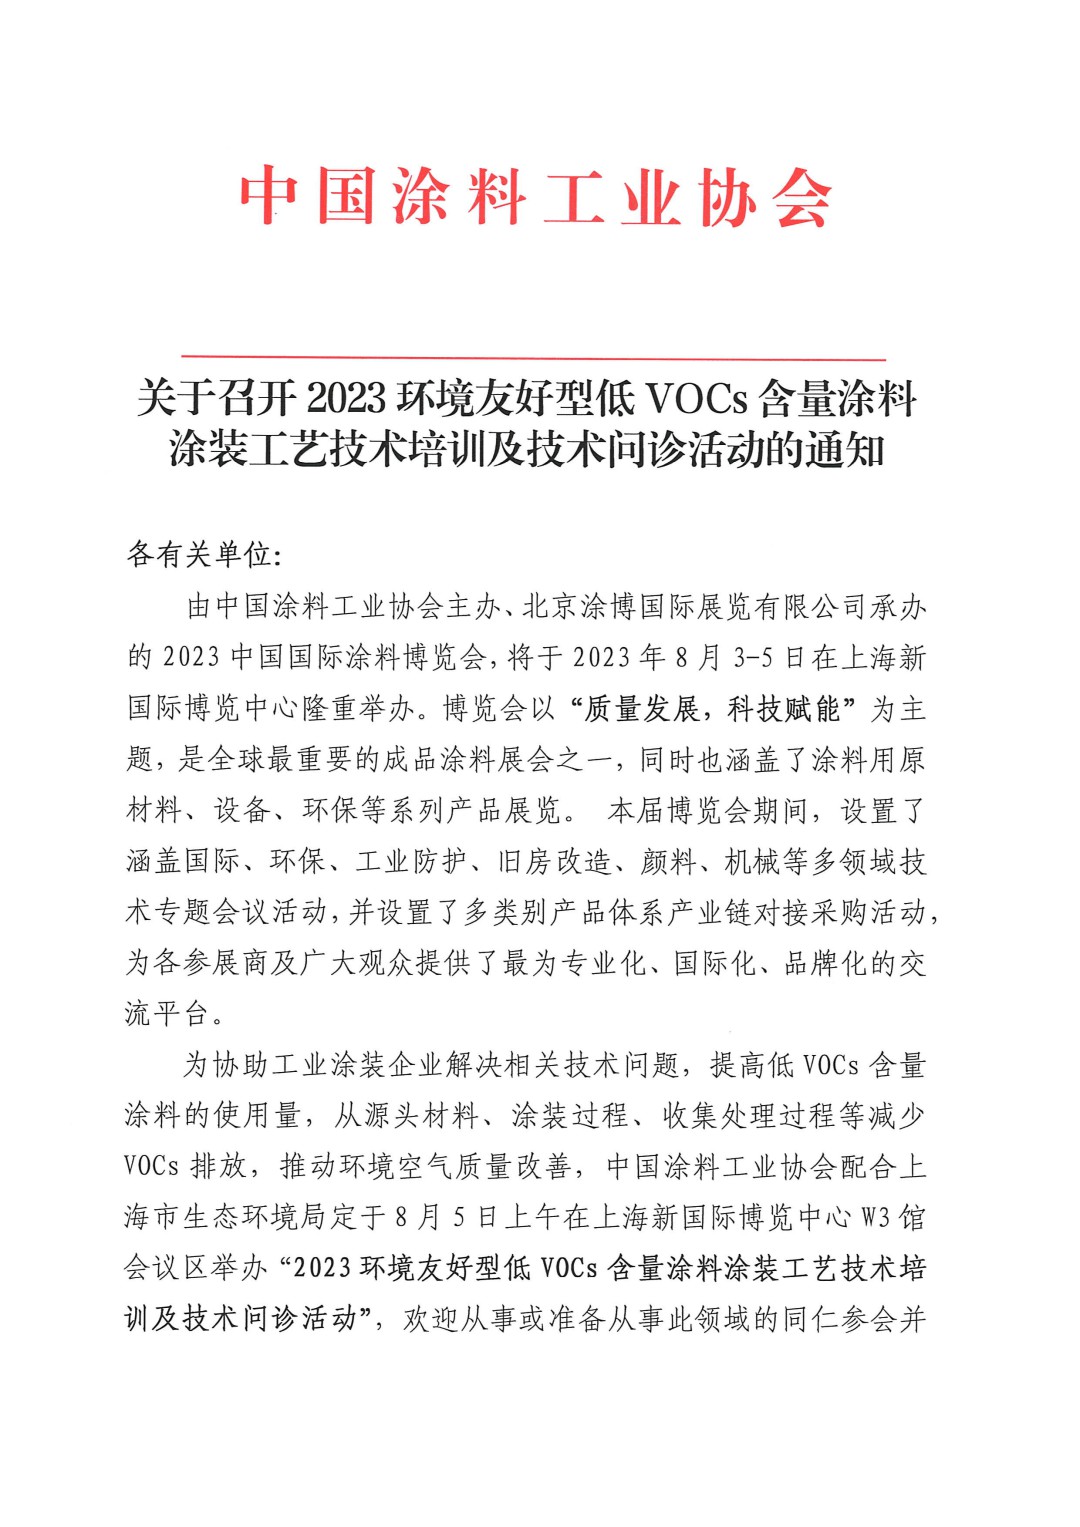 关于召开2023环境友好型低VOCs含量涂料涂装工艺技术培训及技术问诊活动的通知-上海(-1